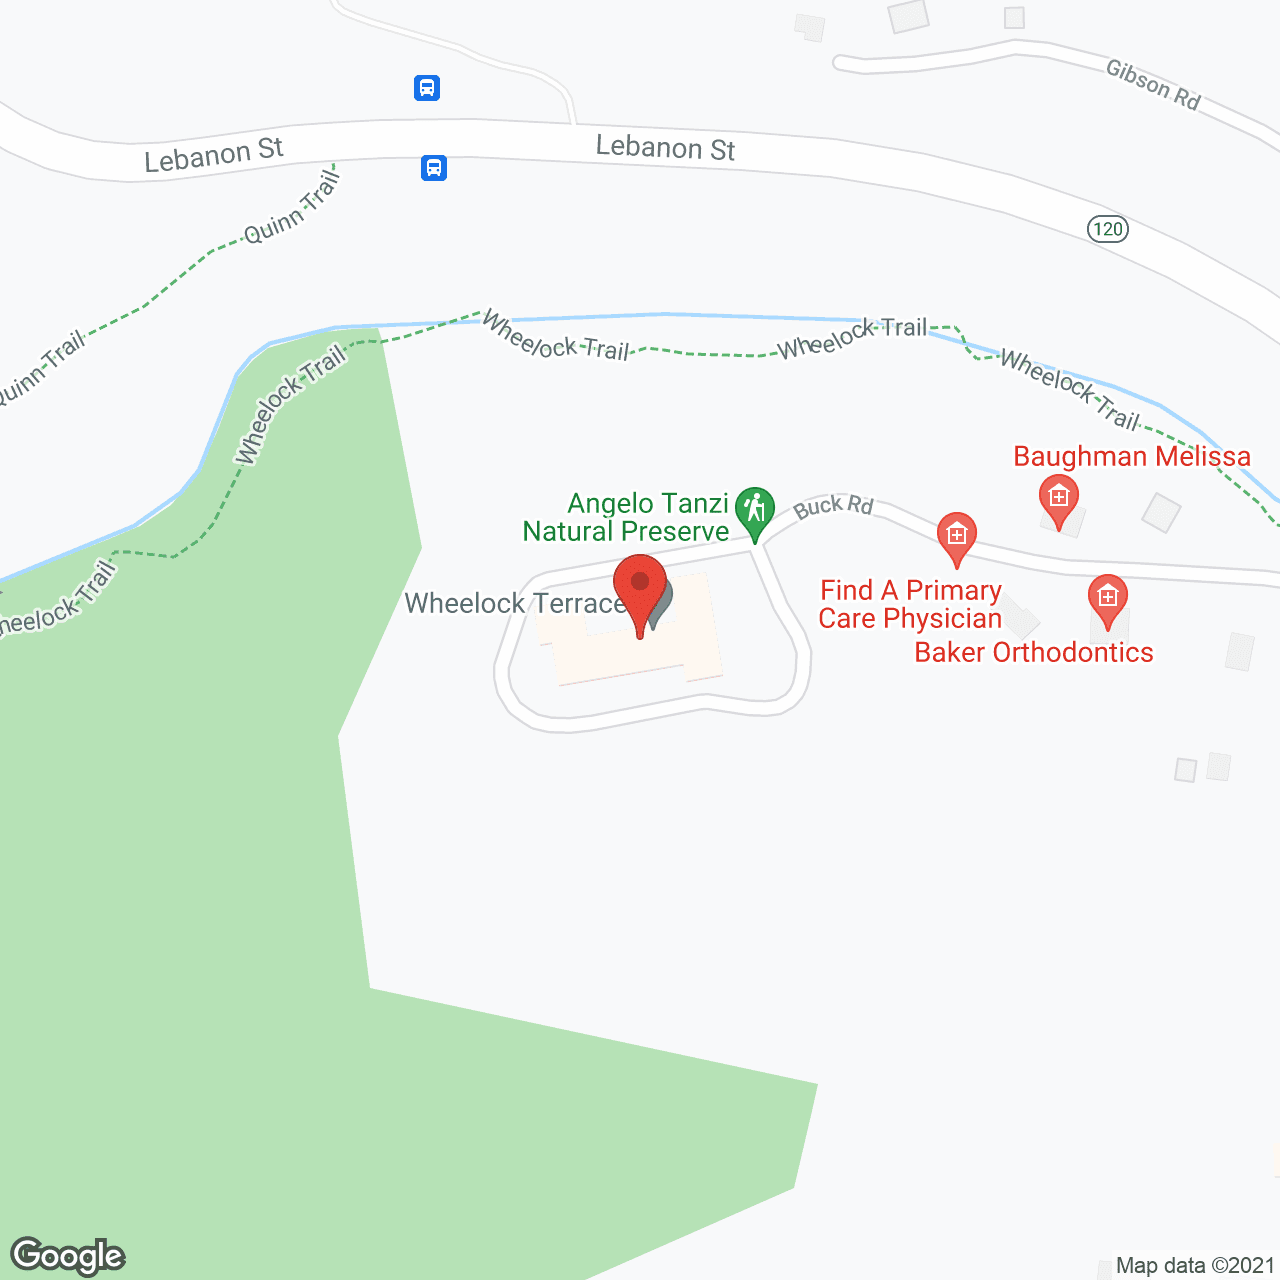 Wheelock Terrace in google map